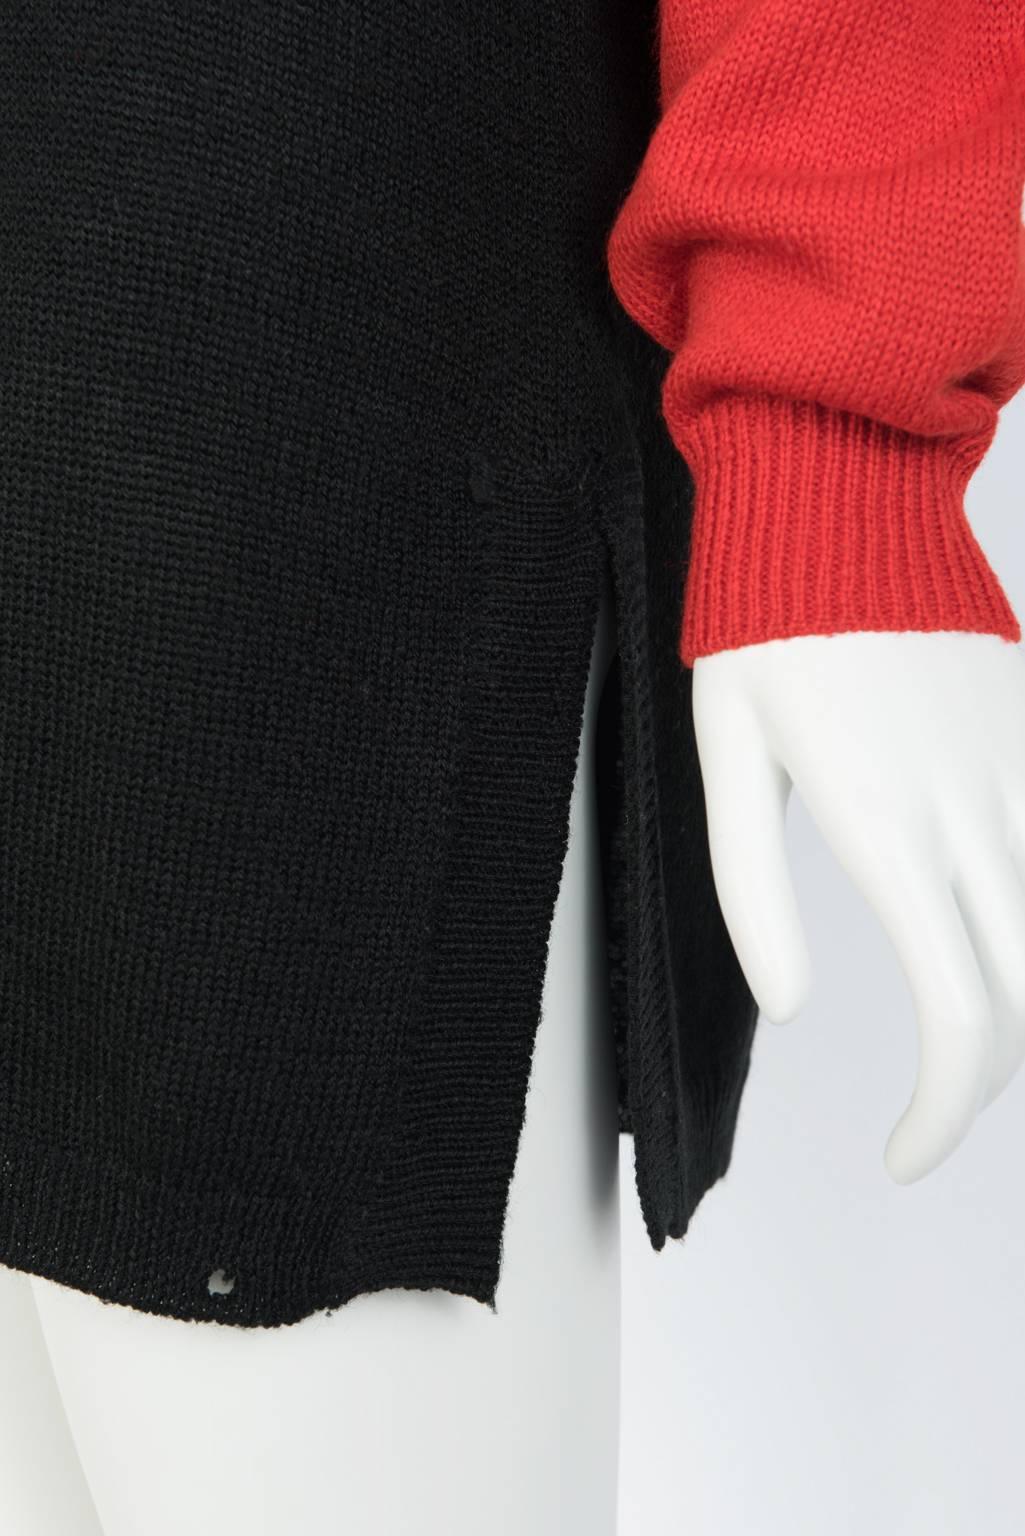 Kansai Yamamoto Embroidered Knit Tunic For Sale 1